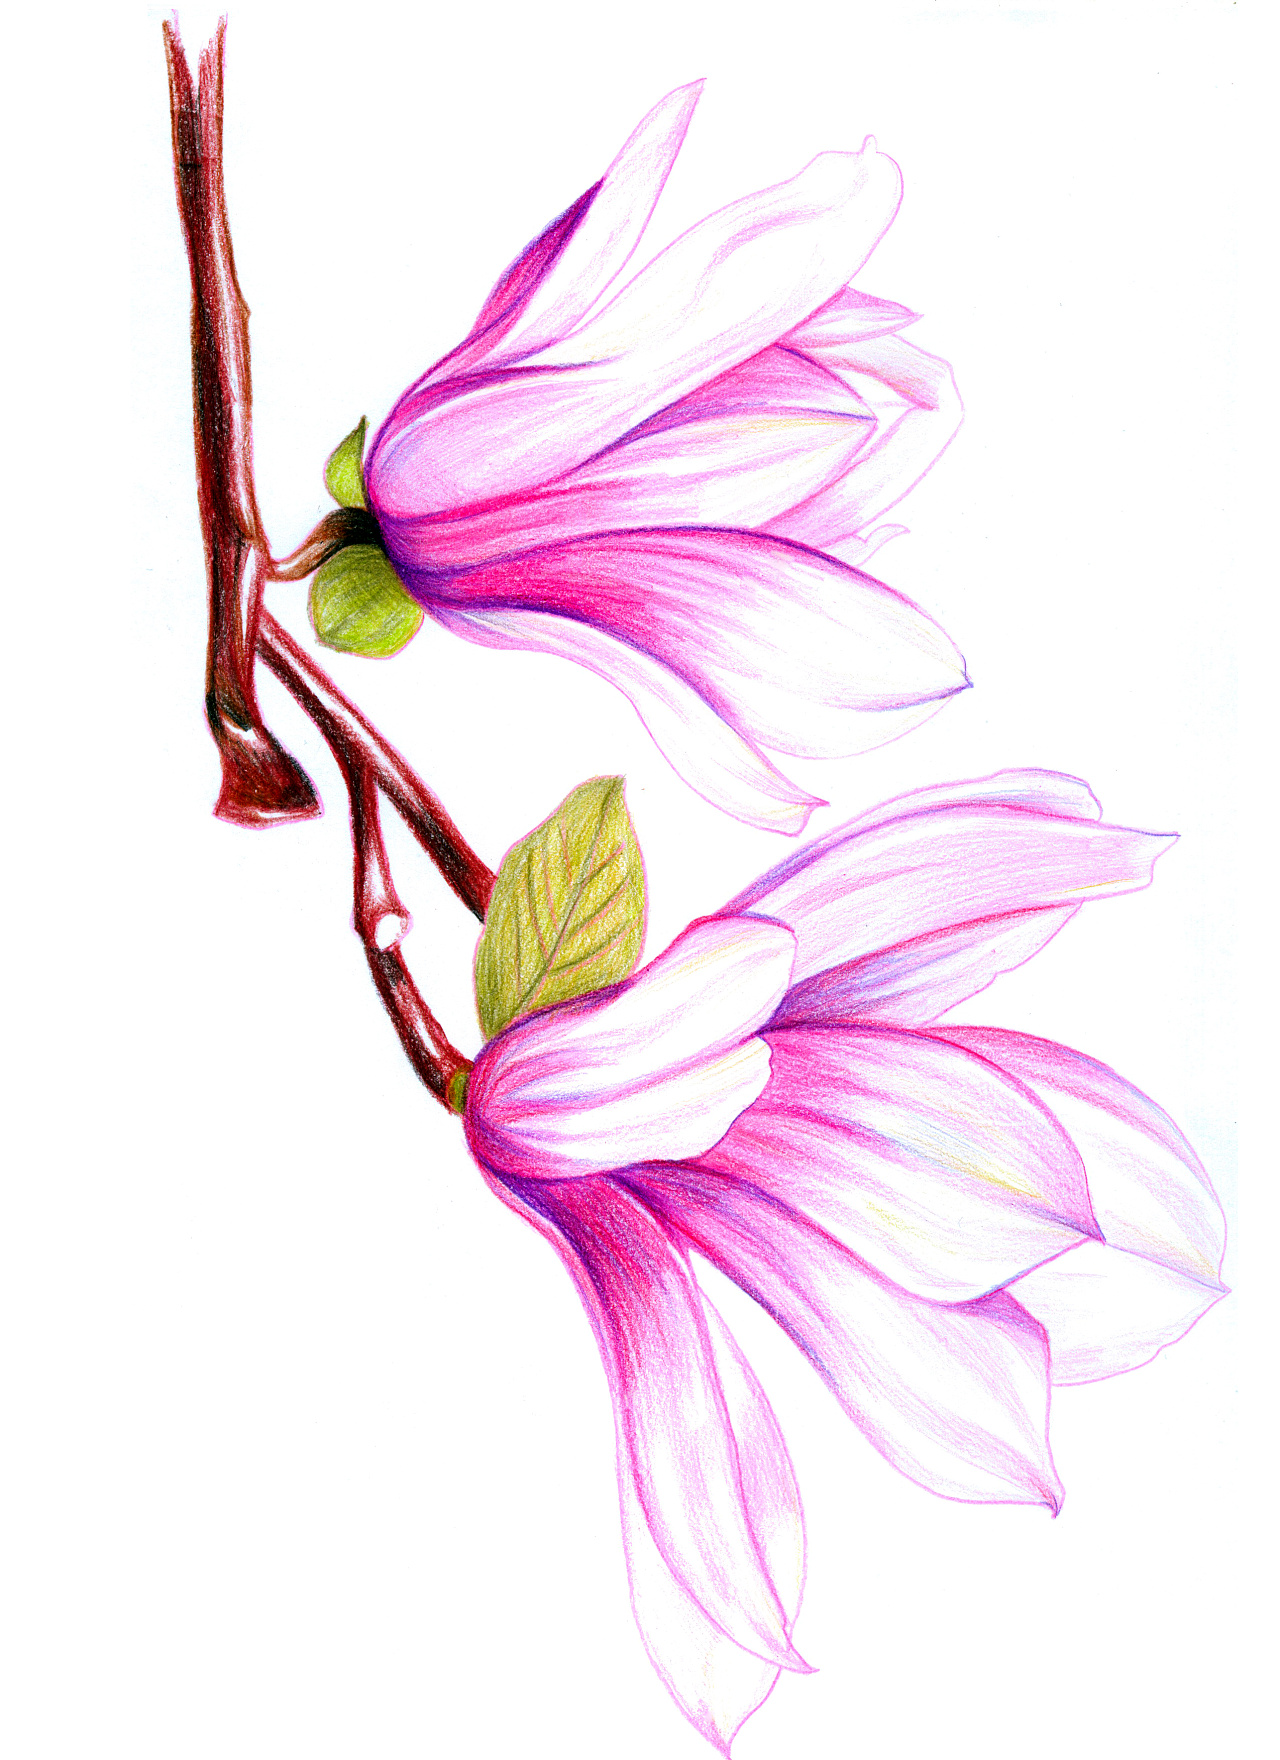 工笔画兰花欣赏与兰花的寓意和象征